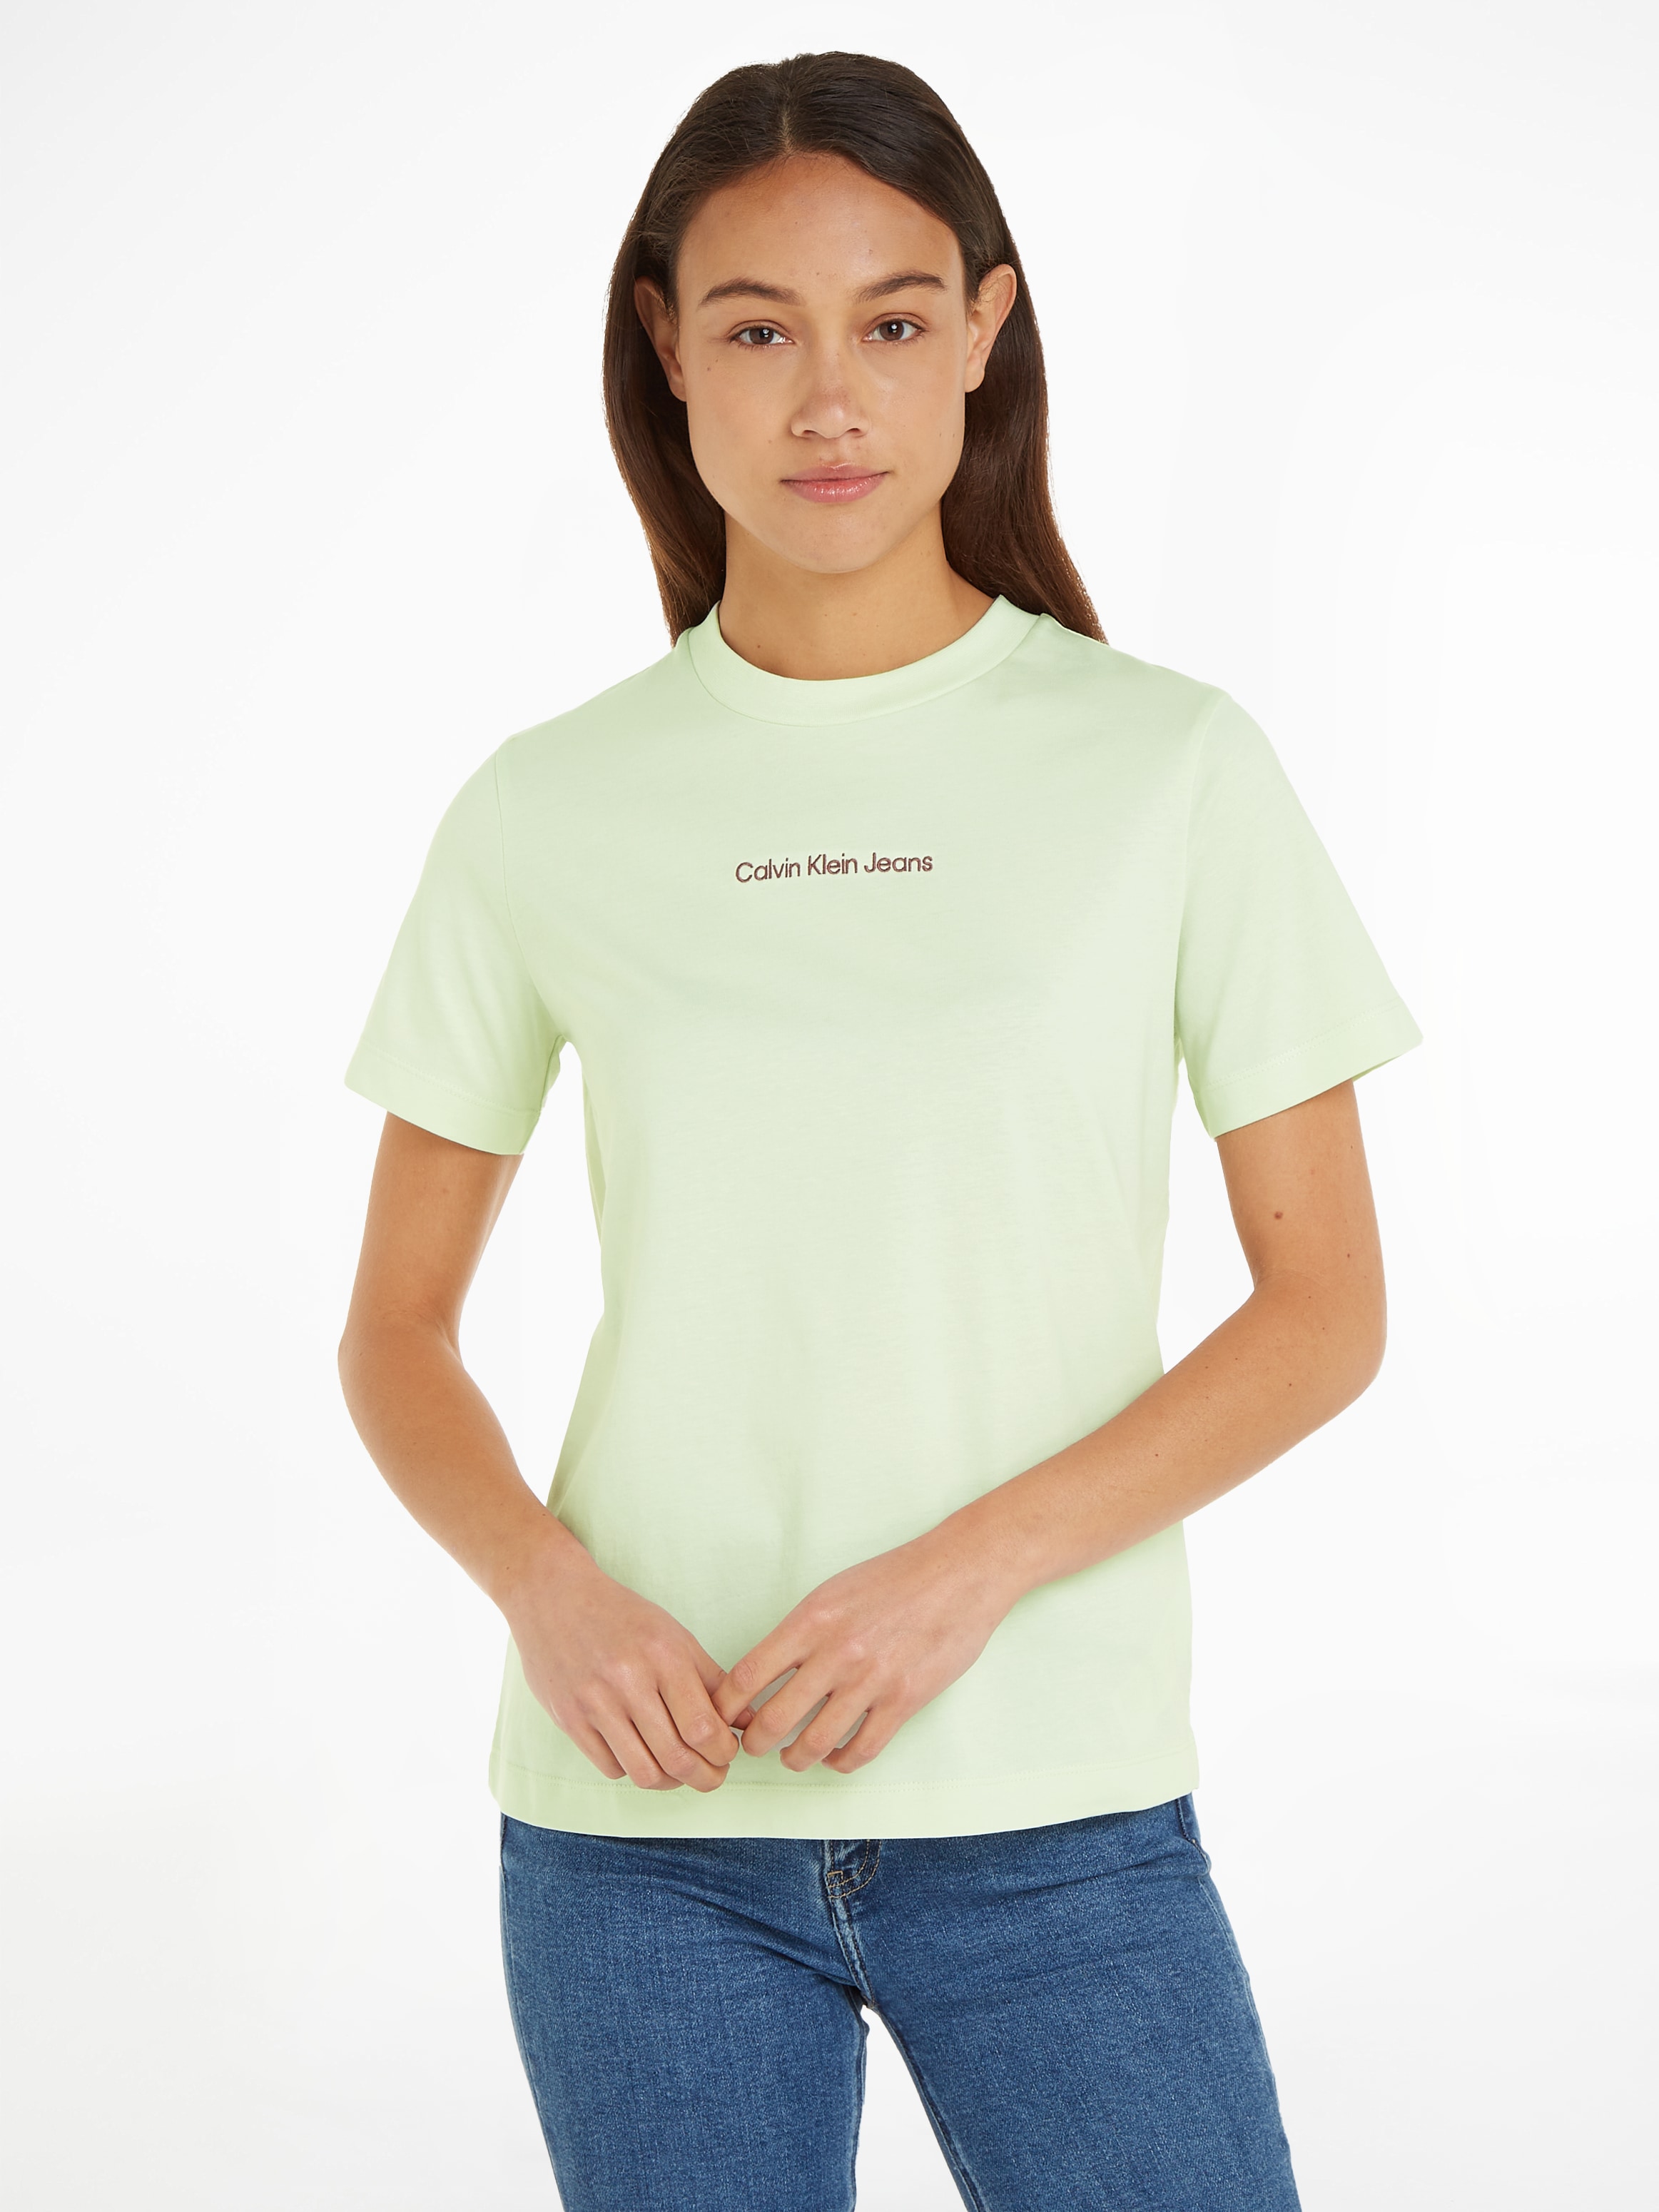 »INSTITUTIONAL T-Shirt Online Markenlabel Shop im Klein mit Jeans TEE«, OTTO STRAIGHT Calvin